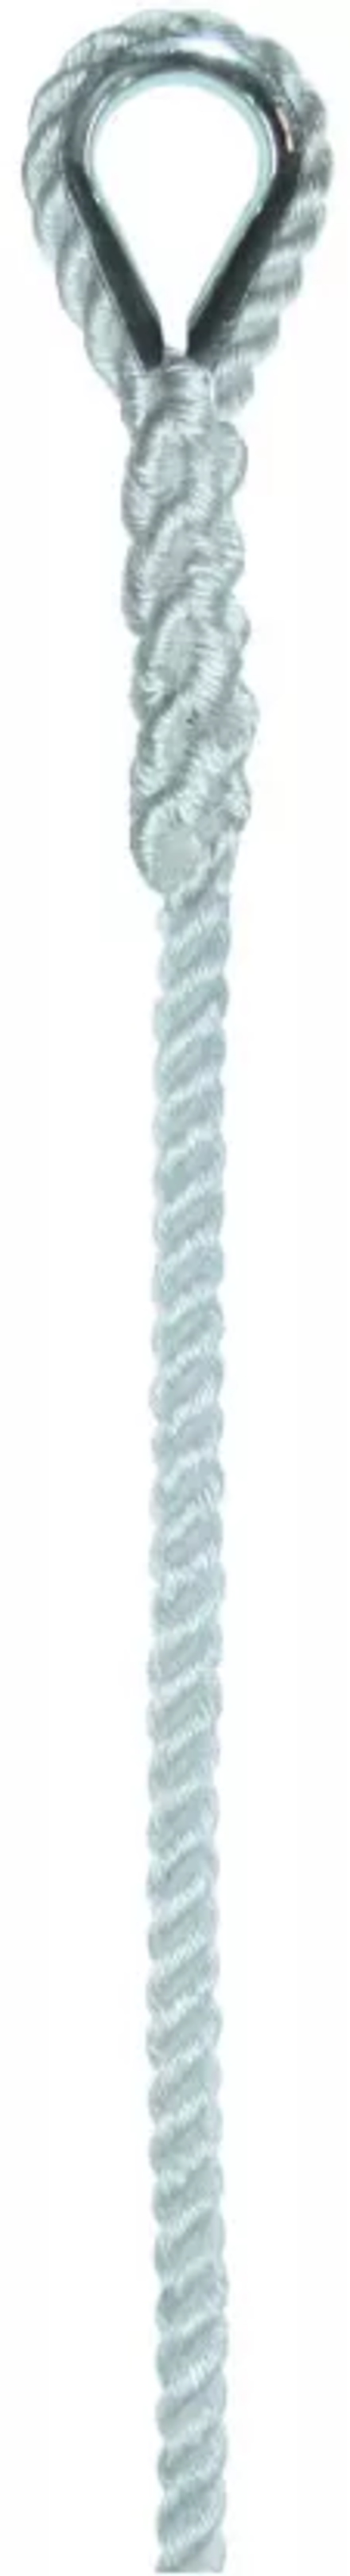 Élingue corde d.10 mm 1 boucle cossée cmu 138 kg long 1 m LEVAC - 4407F